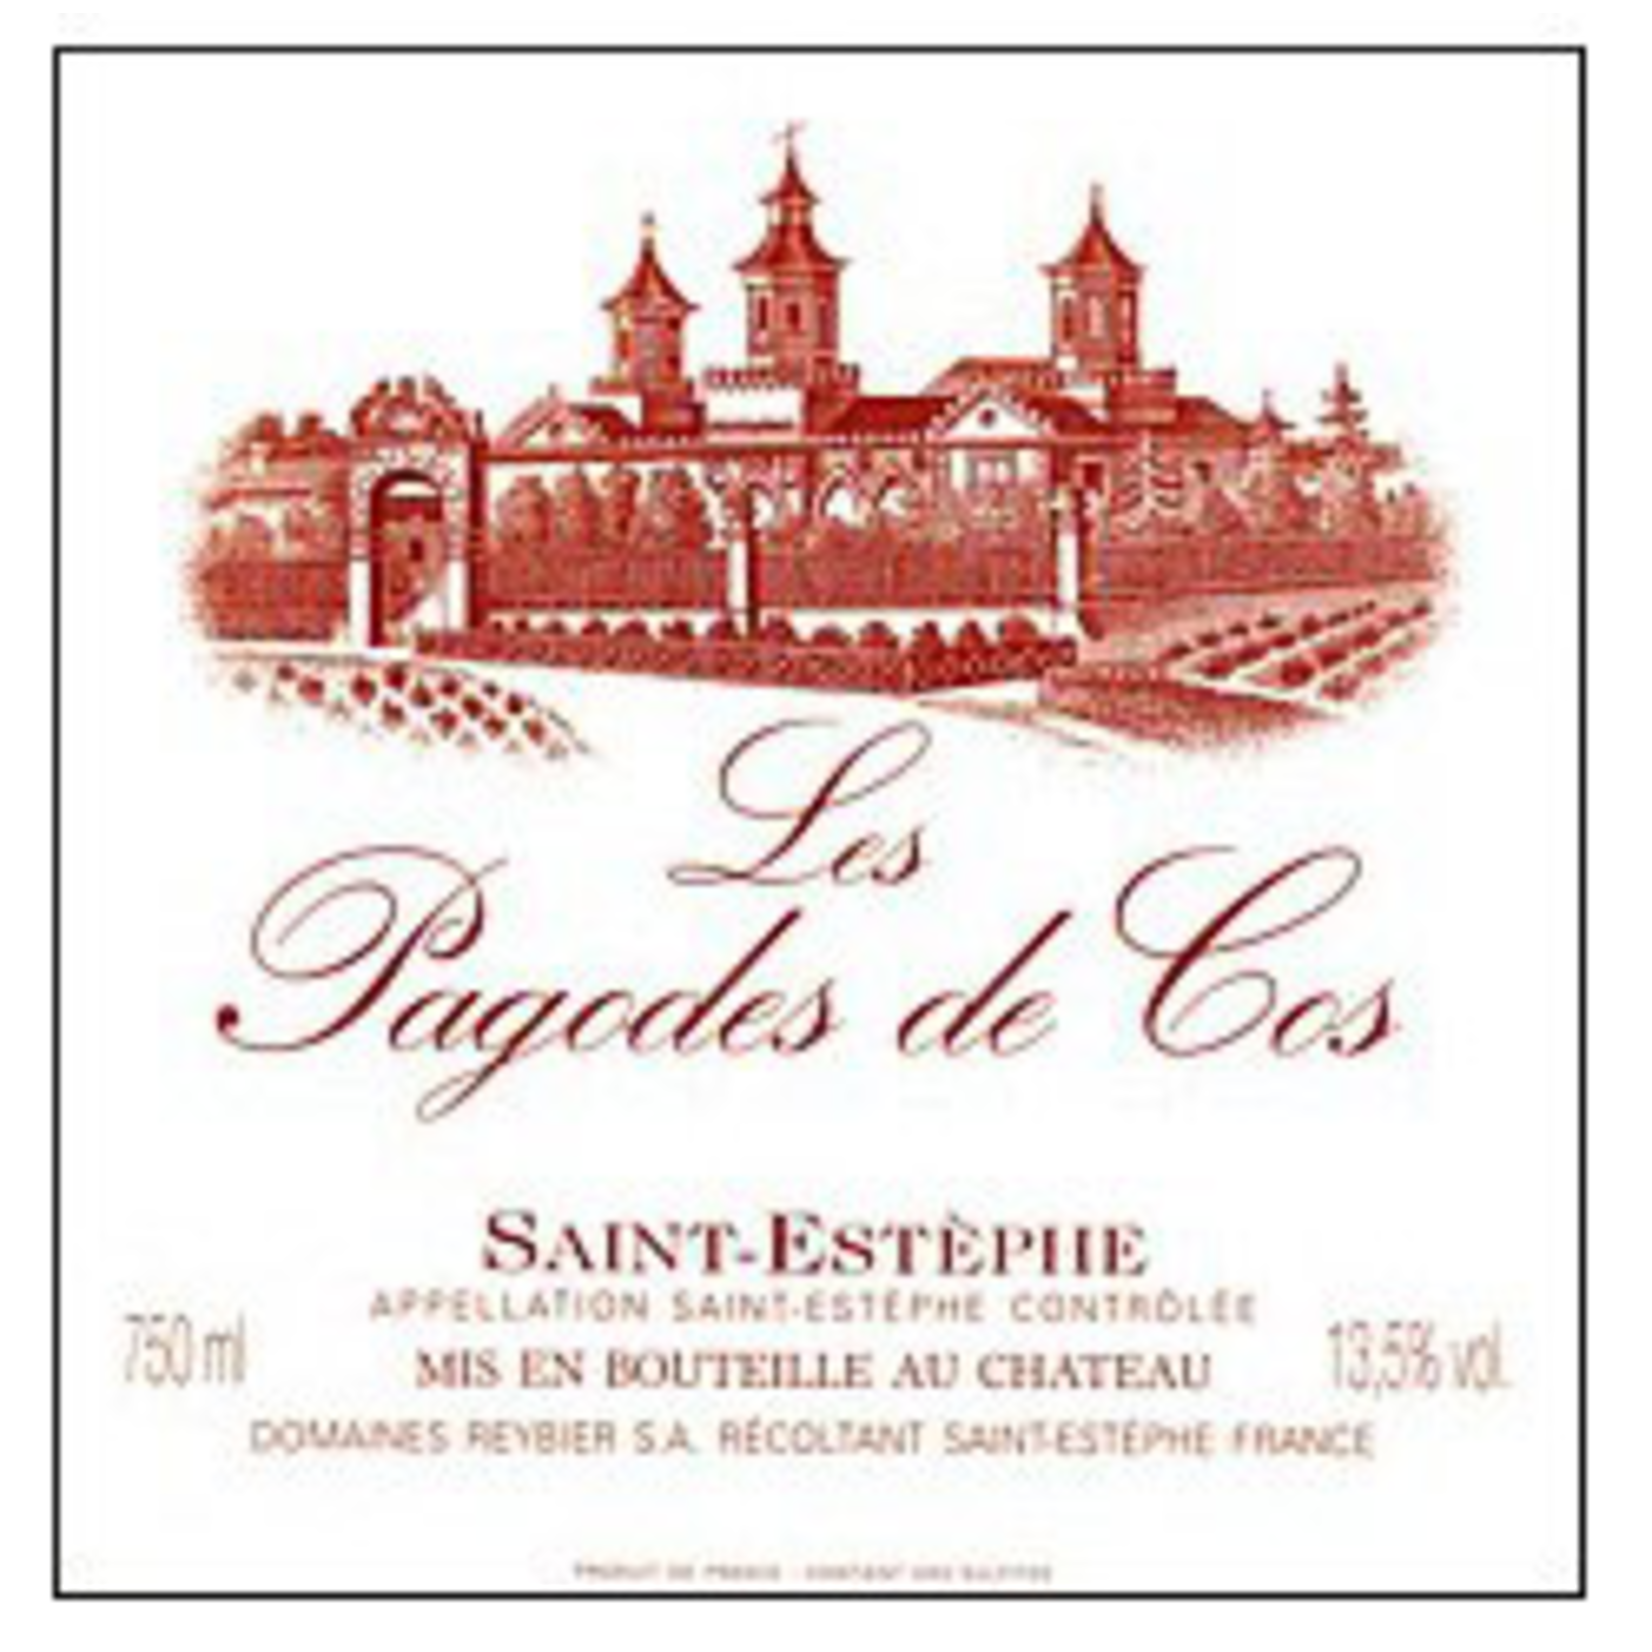 Wine Les Pagodes de Cos Saint-Estèphe 2012